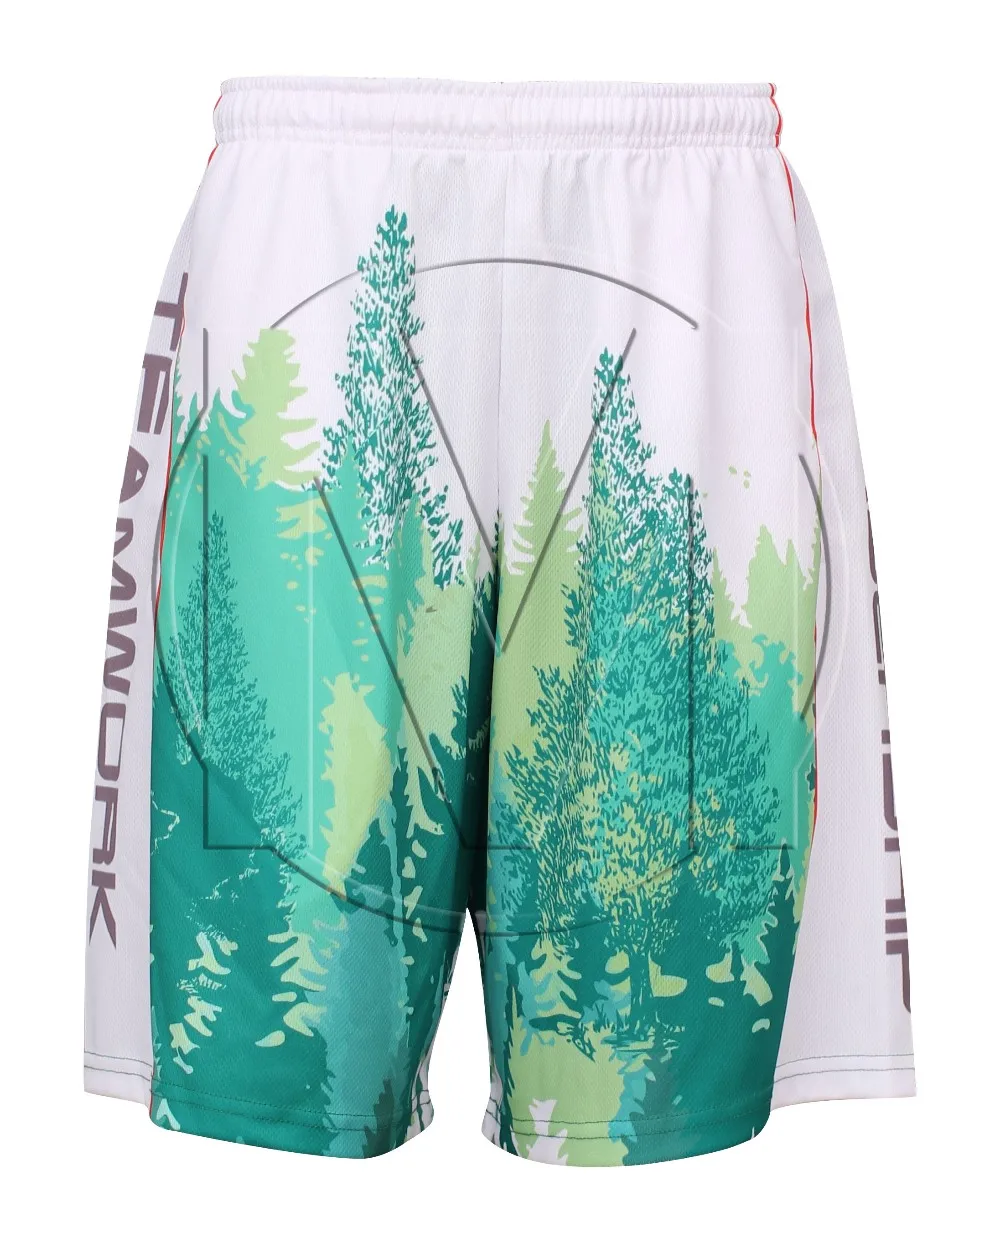 Custom Sublimated Lacrosse Shorts - Buy Sublimated Lacrosse Shorts ...